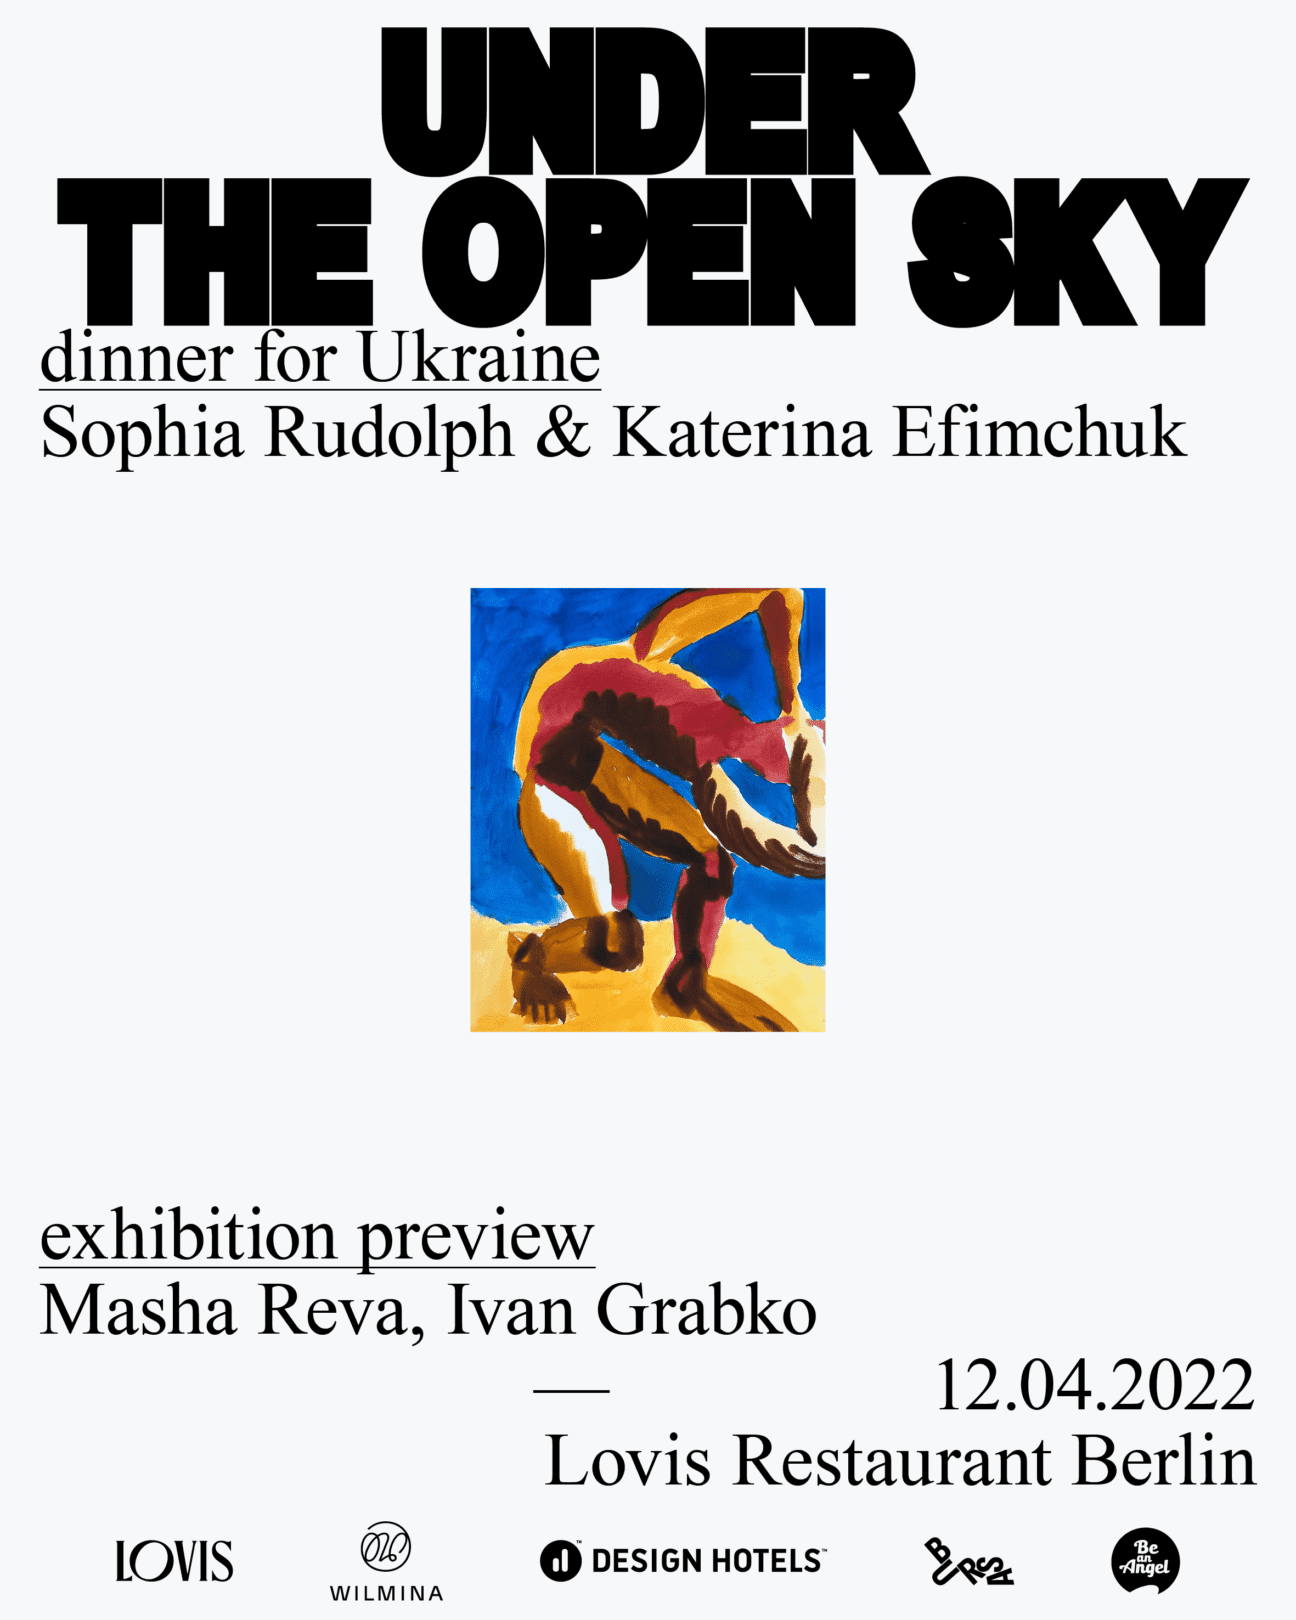 Under the open Sky - Dinner für Ukraine Event Banner